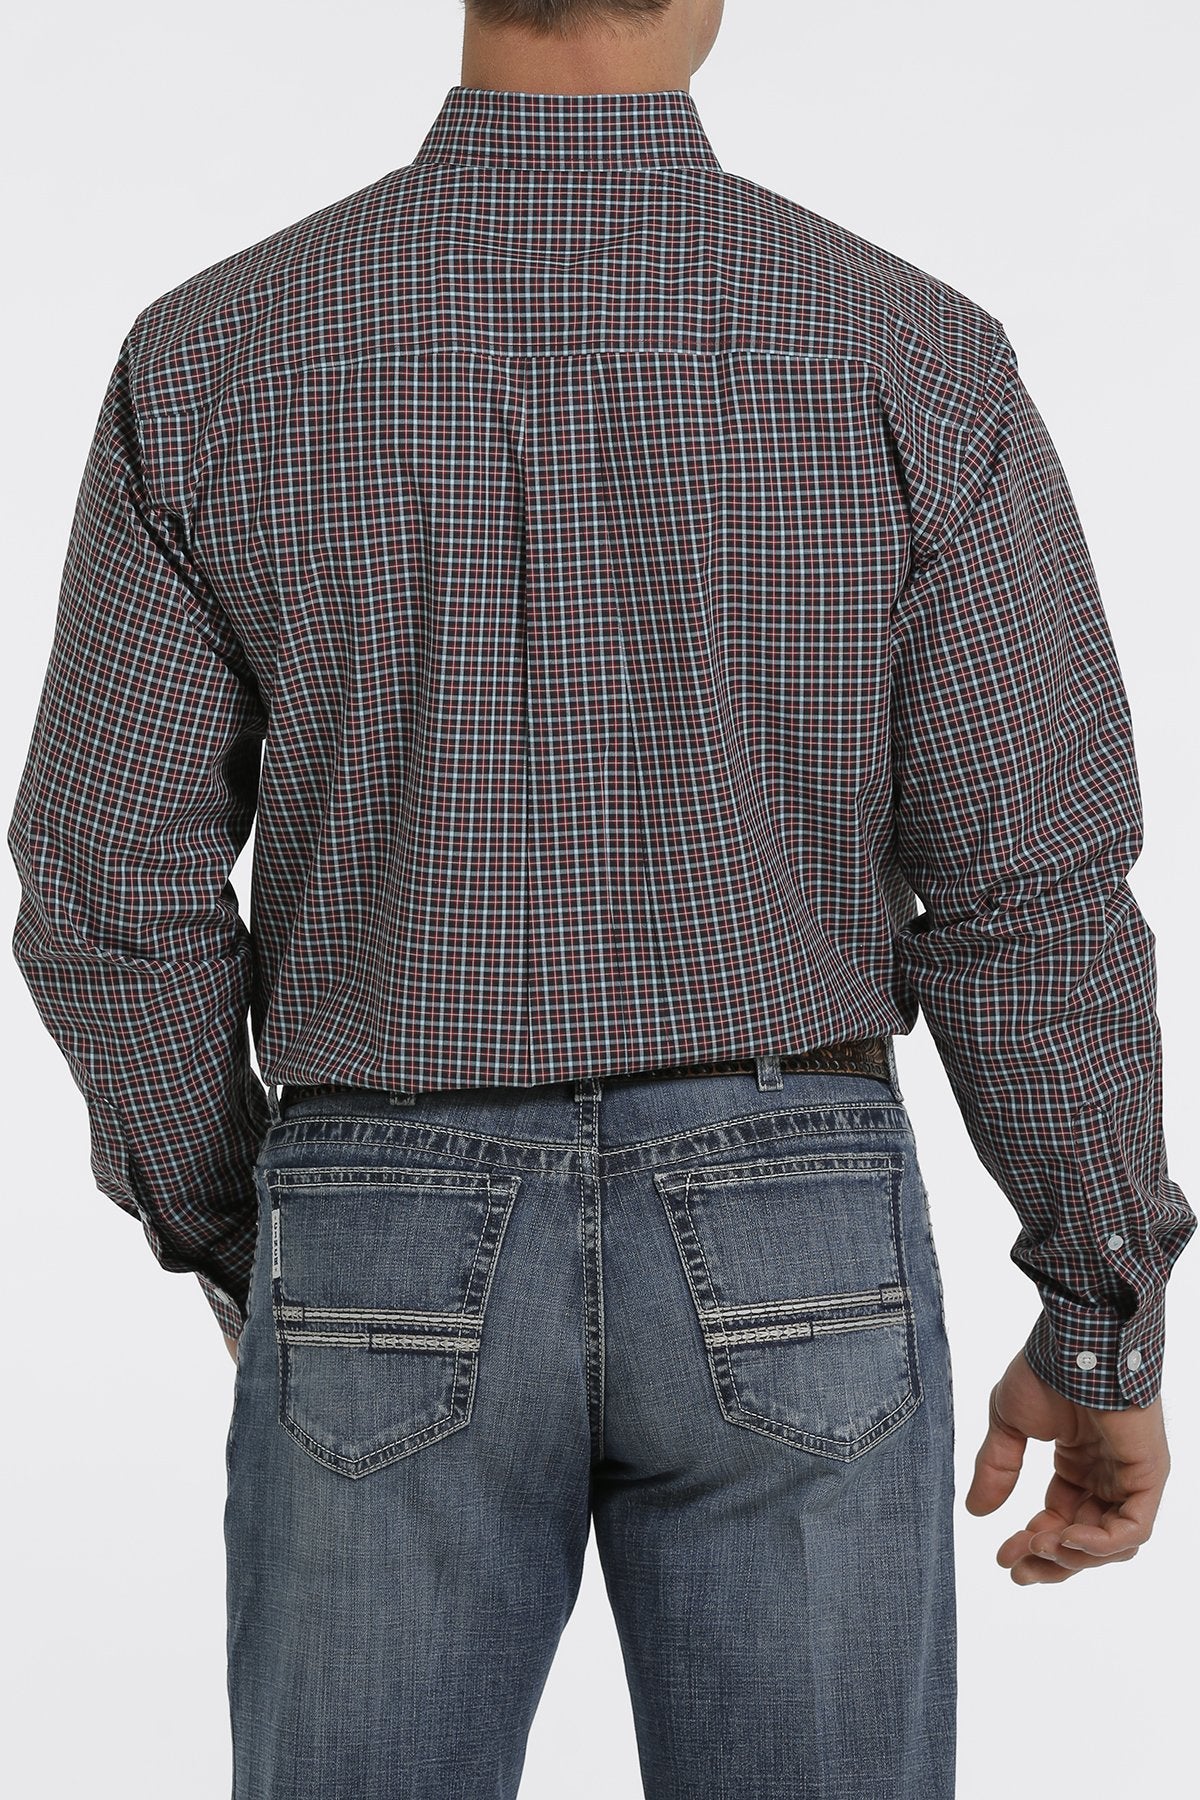 Cinch Mens Navy/ Turquoise/ Cranberry Plaid Cotton L/S Shirt - MTW1105360